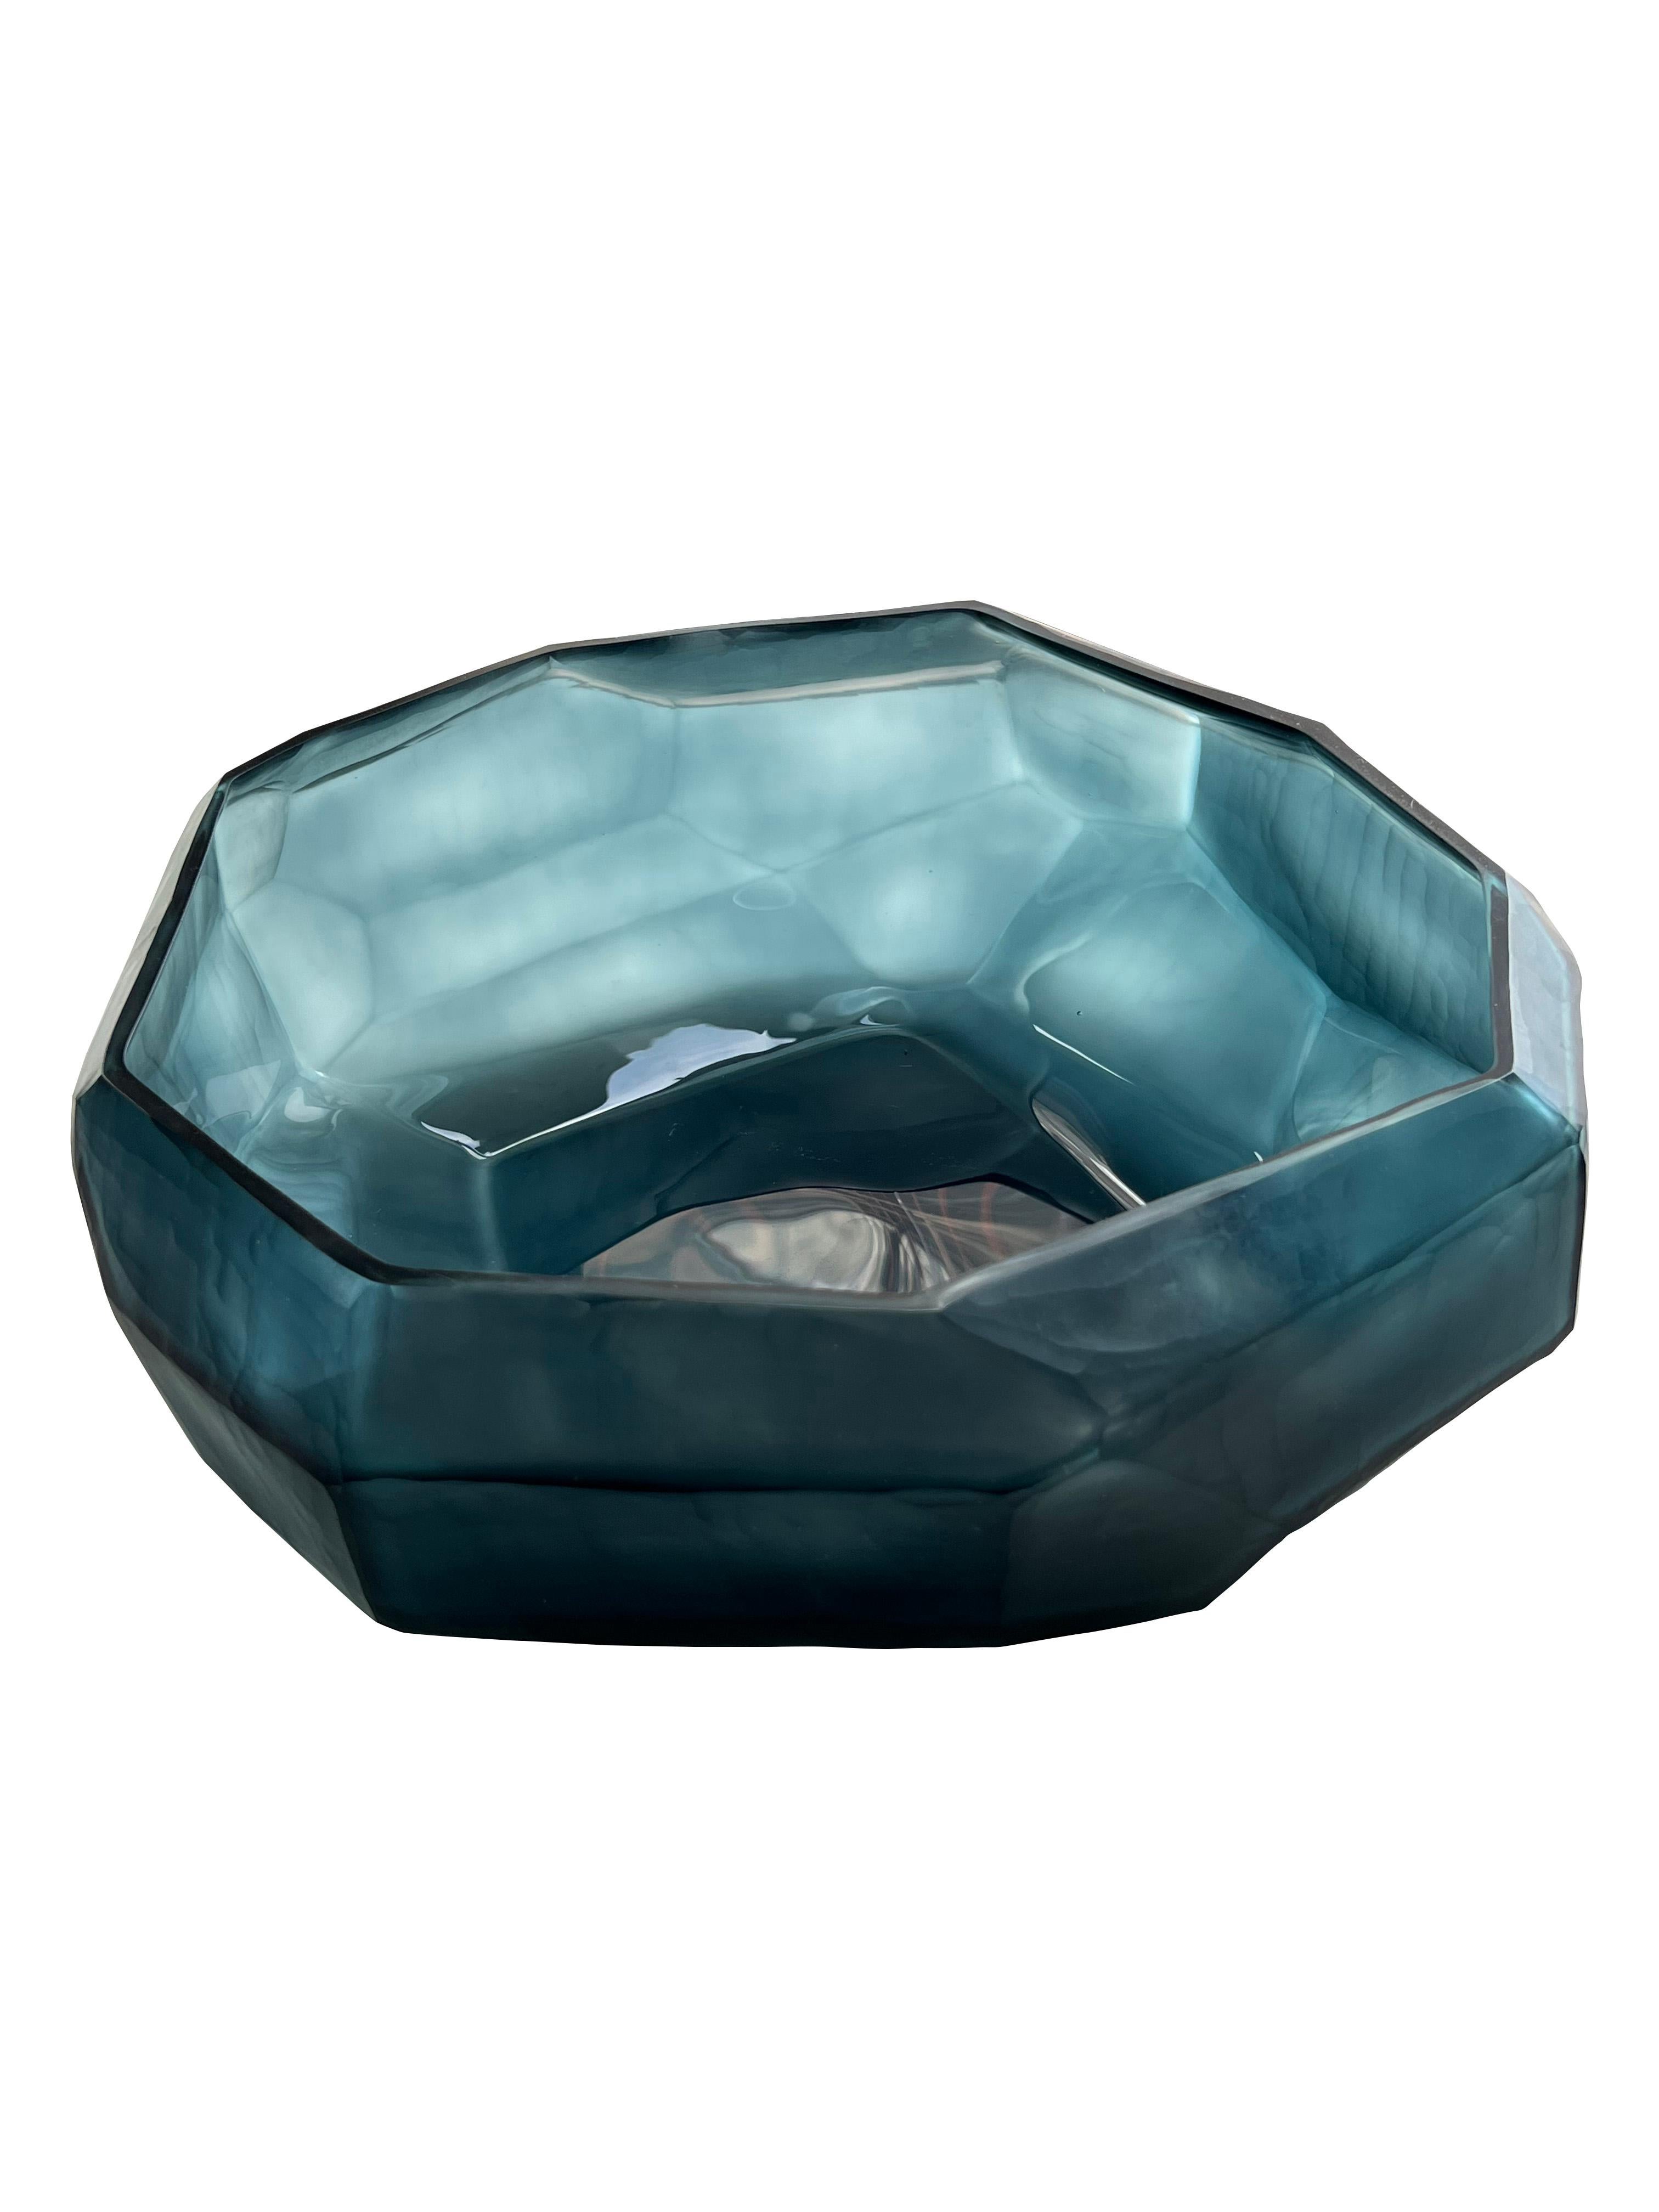 Coupe contemporaine en verre roumain bleu foncé.
Design/One ciselé et cubiste.
Peut contenir de l'eau.
